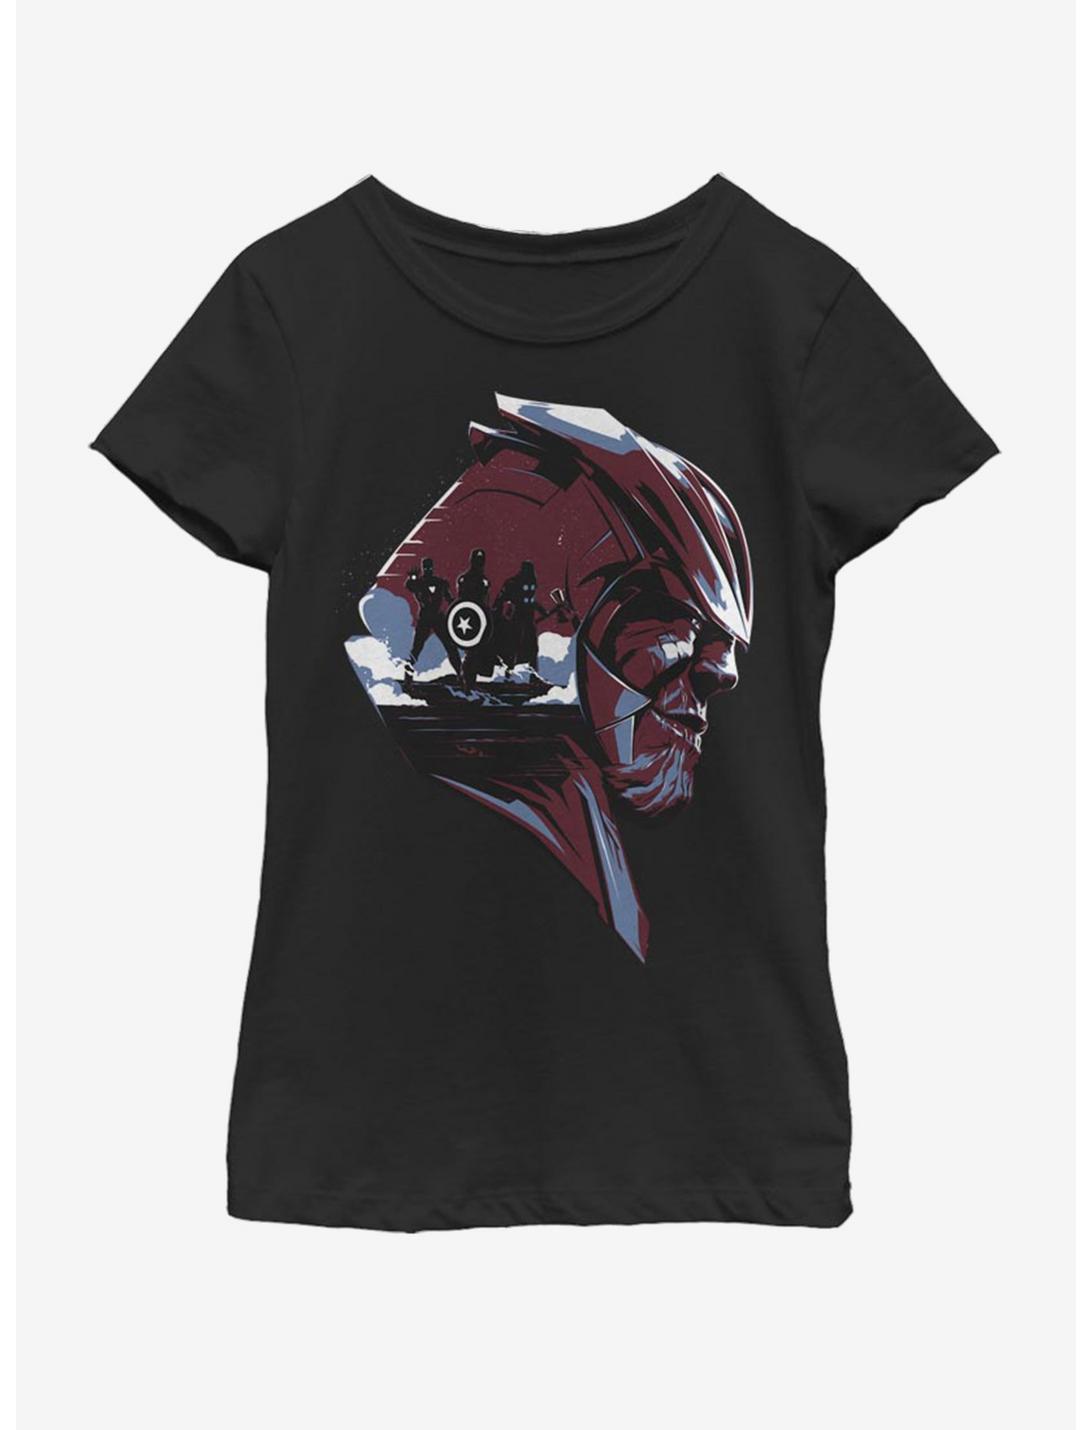 Marvel Avengers: Endgame Thanos Avengers Youth Girls T-Shirt, BLACK, hi-res